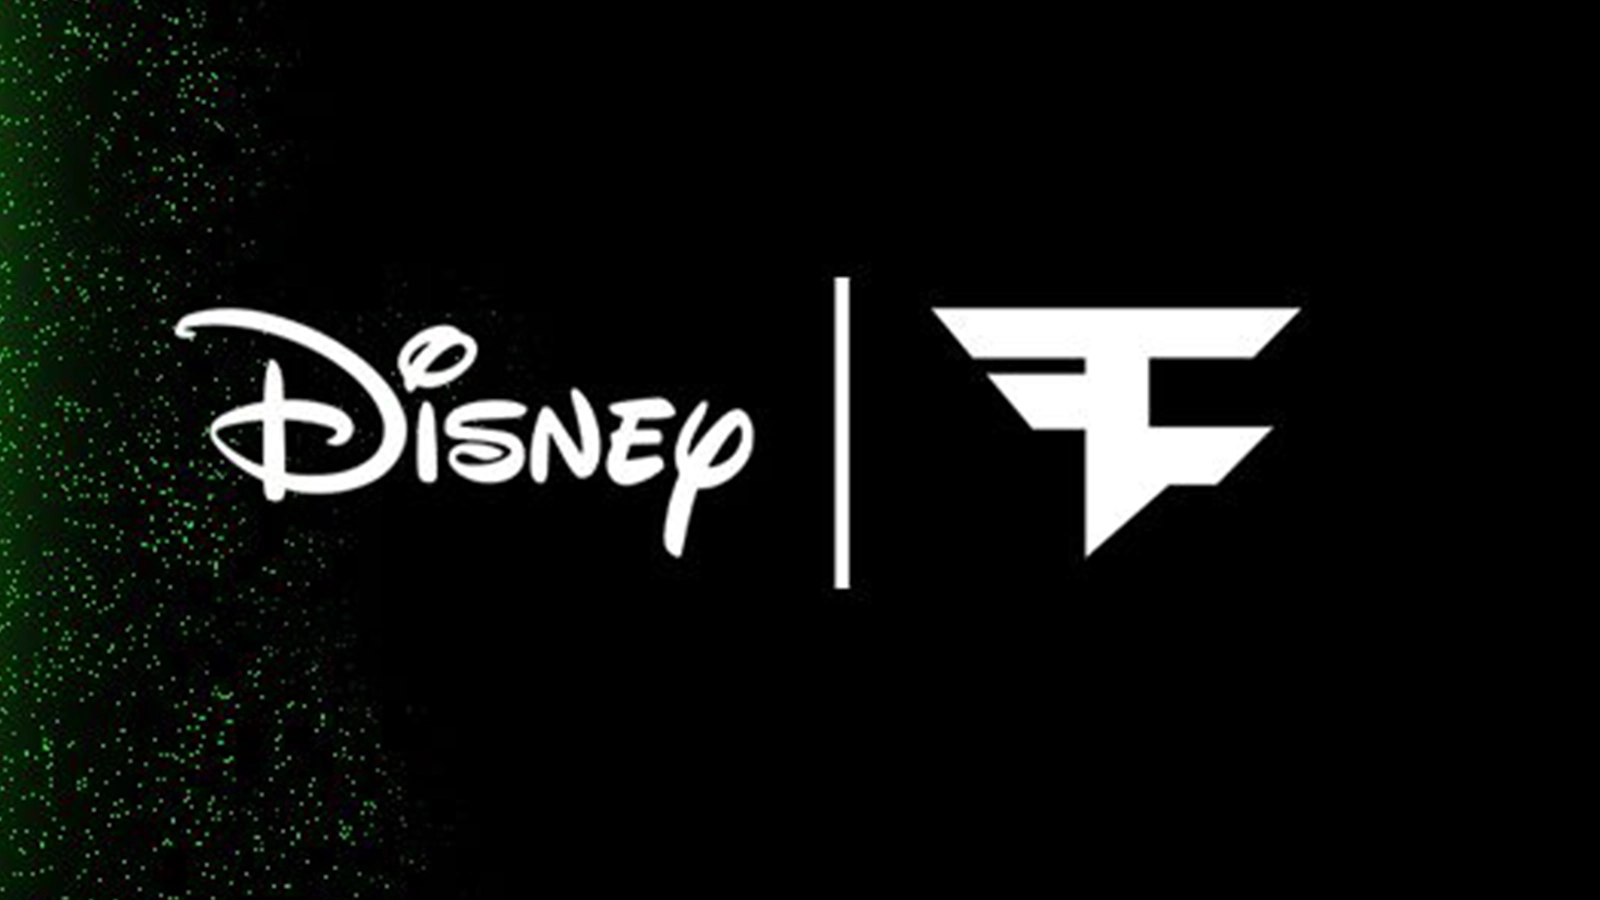 faze clan оголосив про річну співпрацю з Disney!